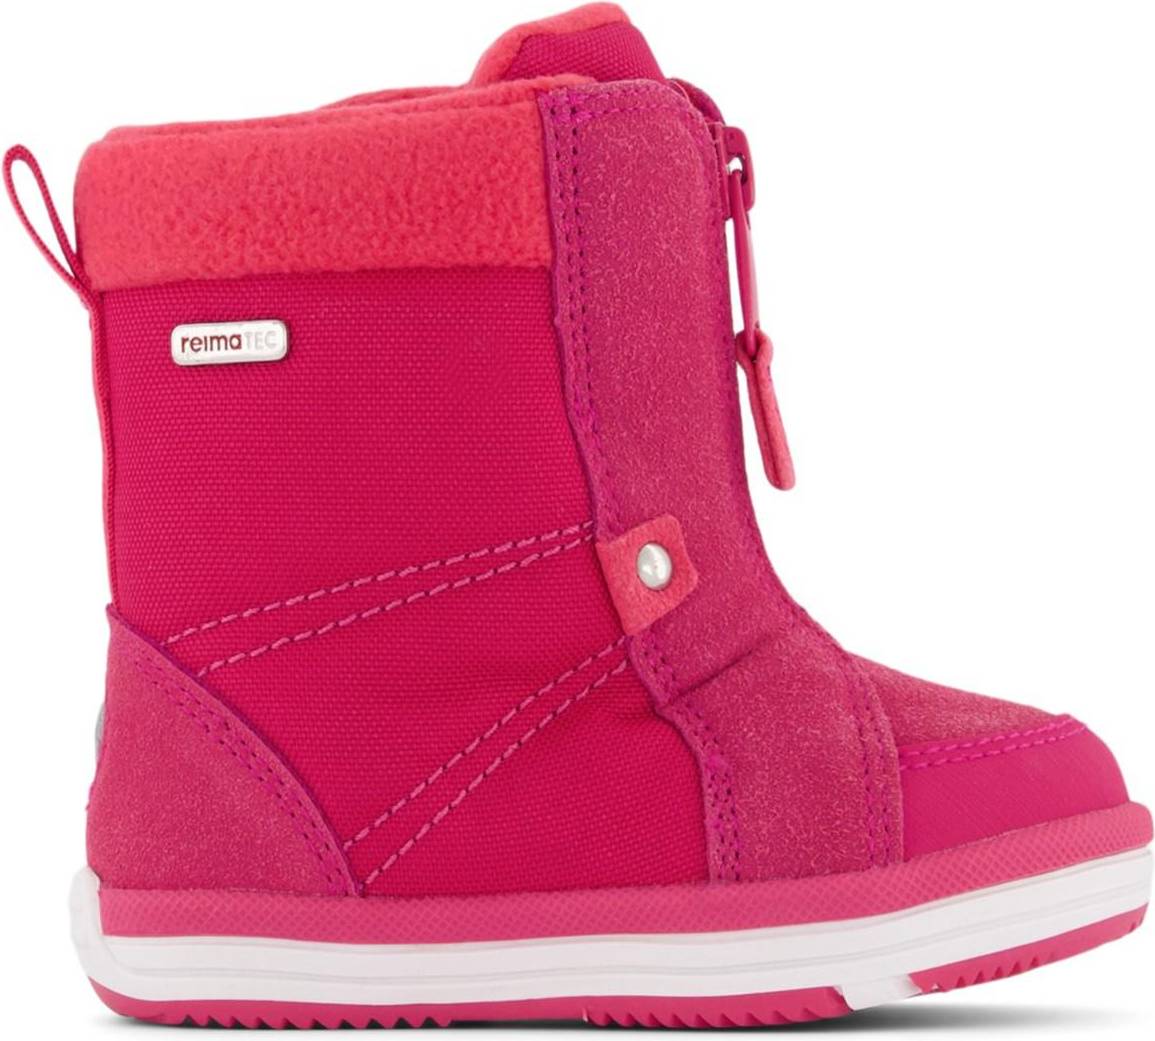  Bild på Reima Frontier Winter Boots - Cranberry Pink vinterskor